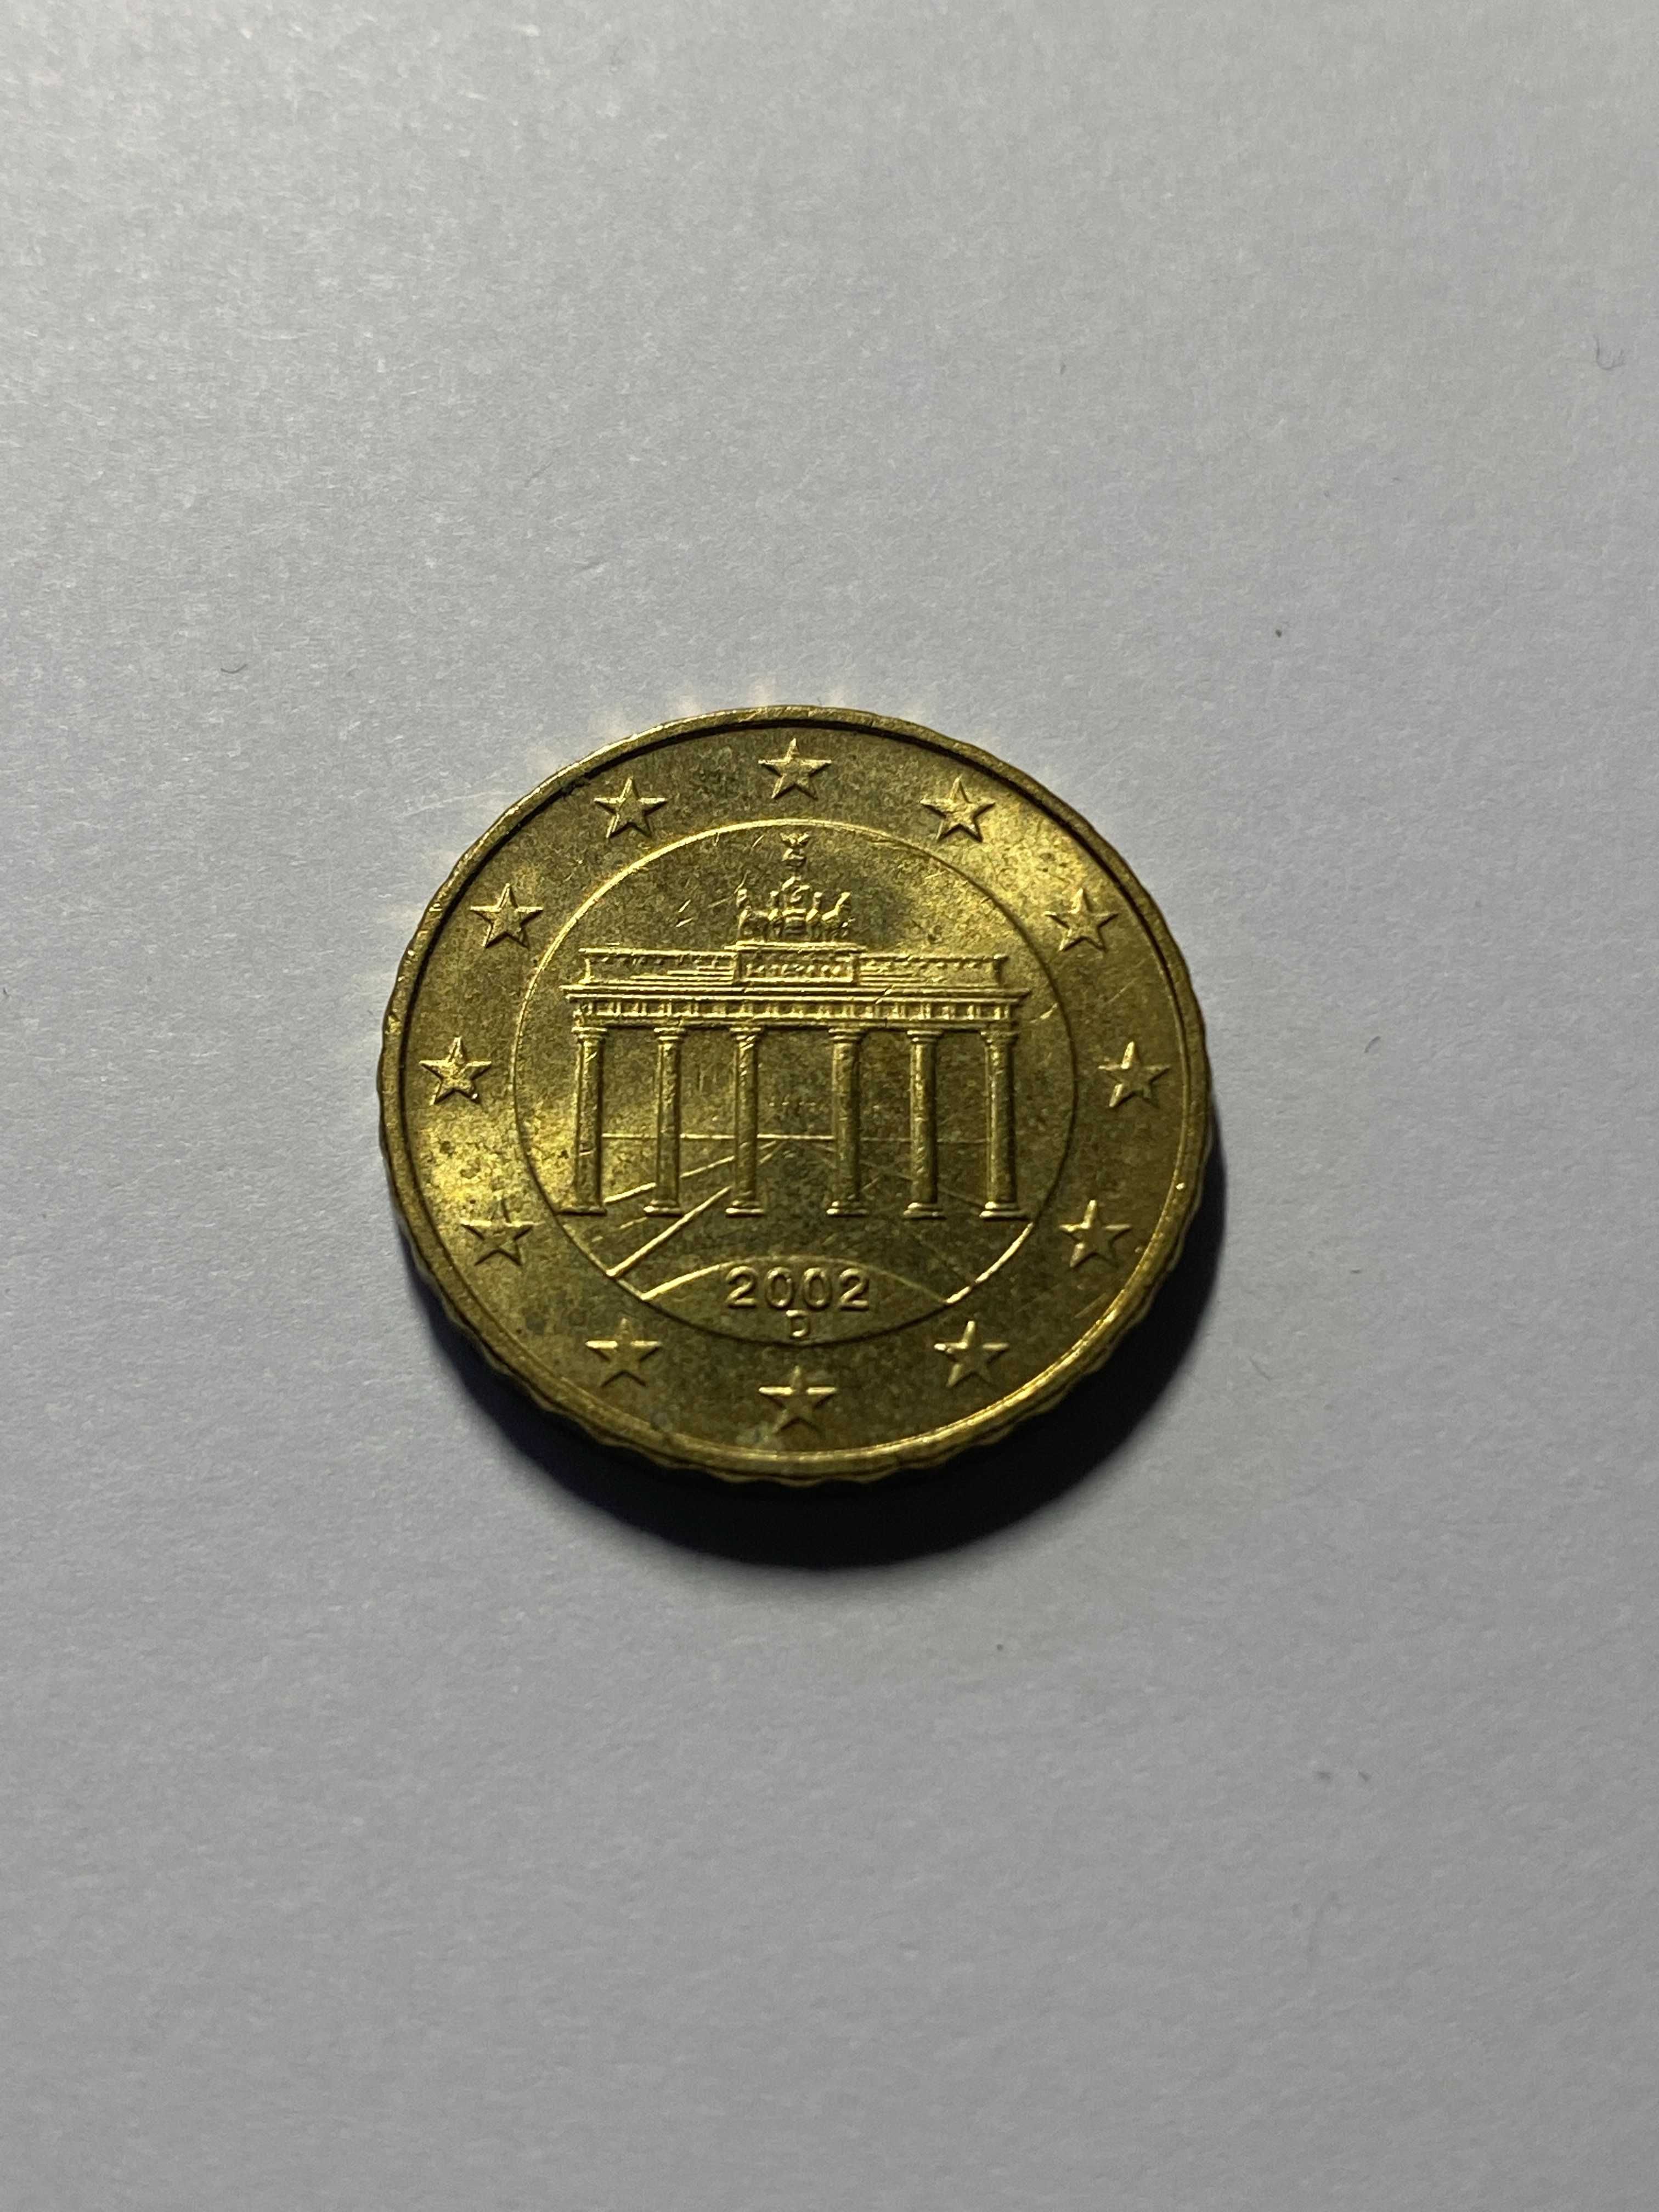 Moneta Niemcy - 10 eurocentów euro cents 2002 D (Mennica Monachium)